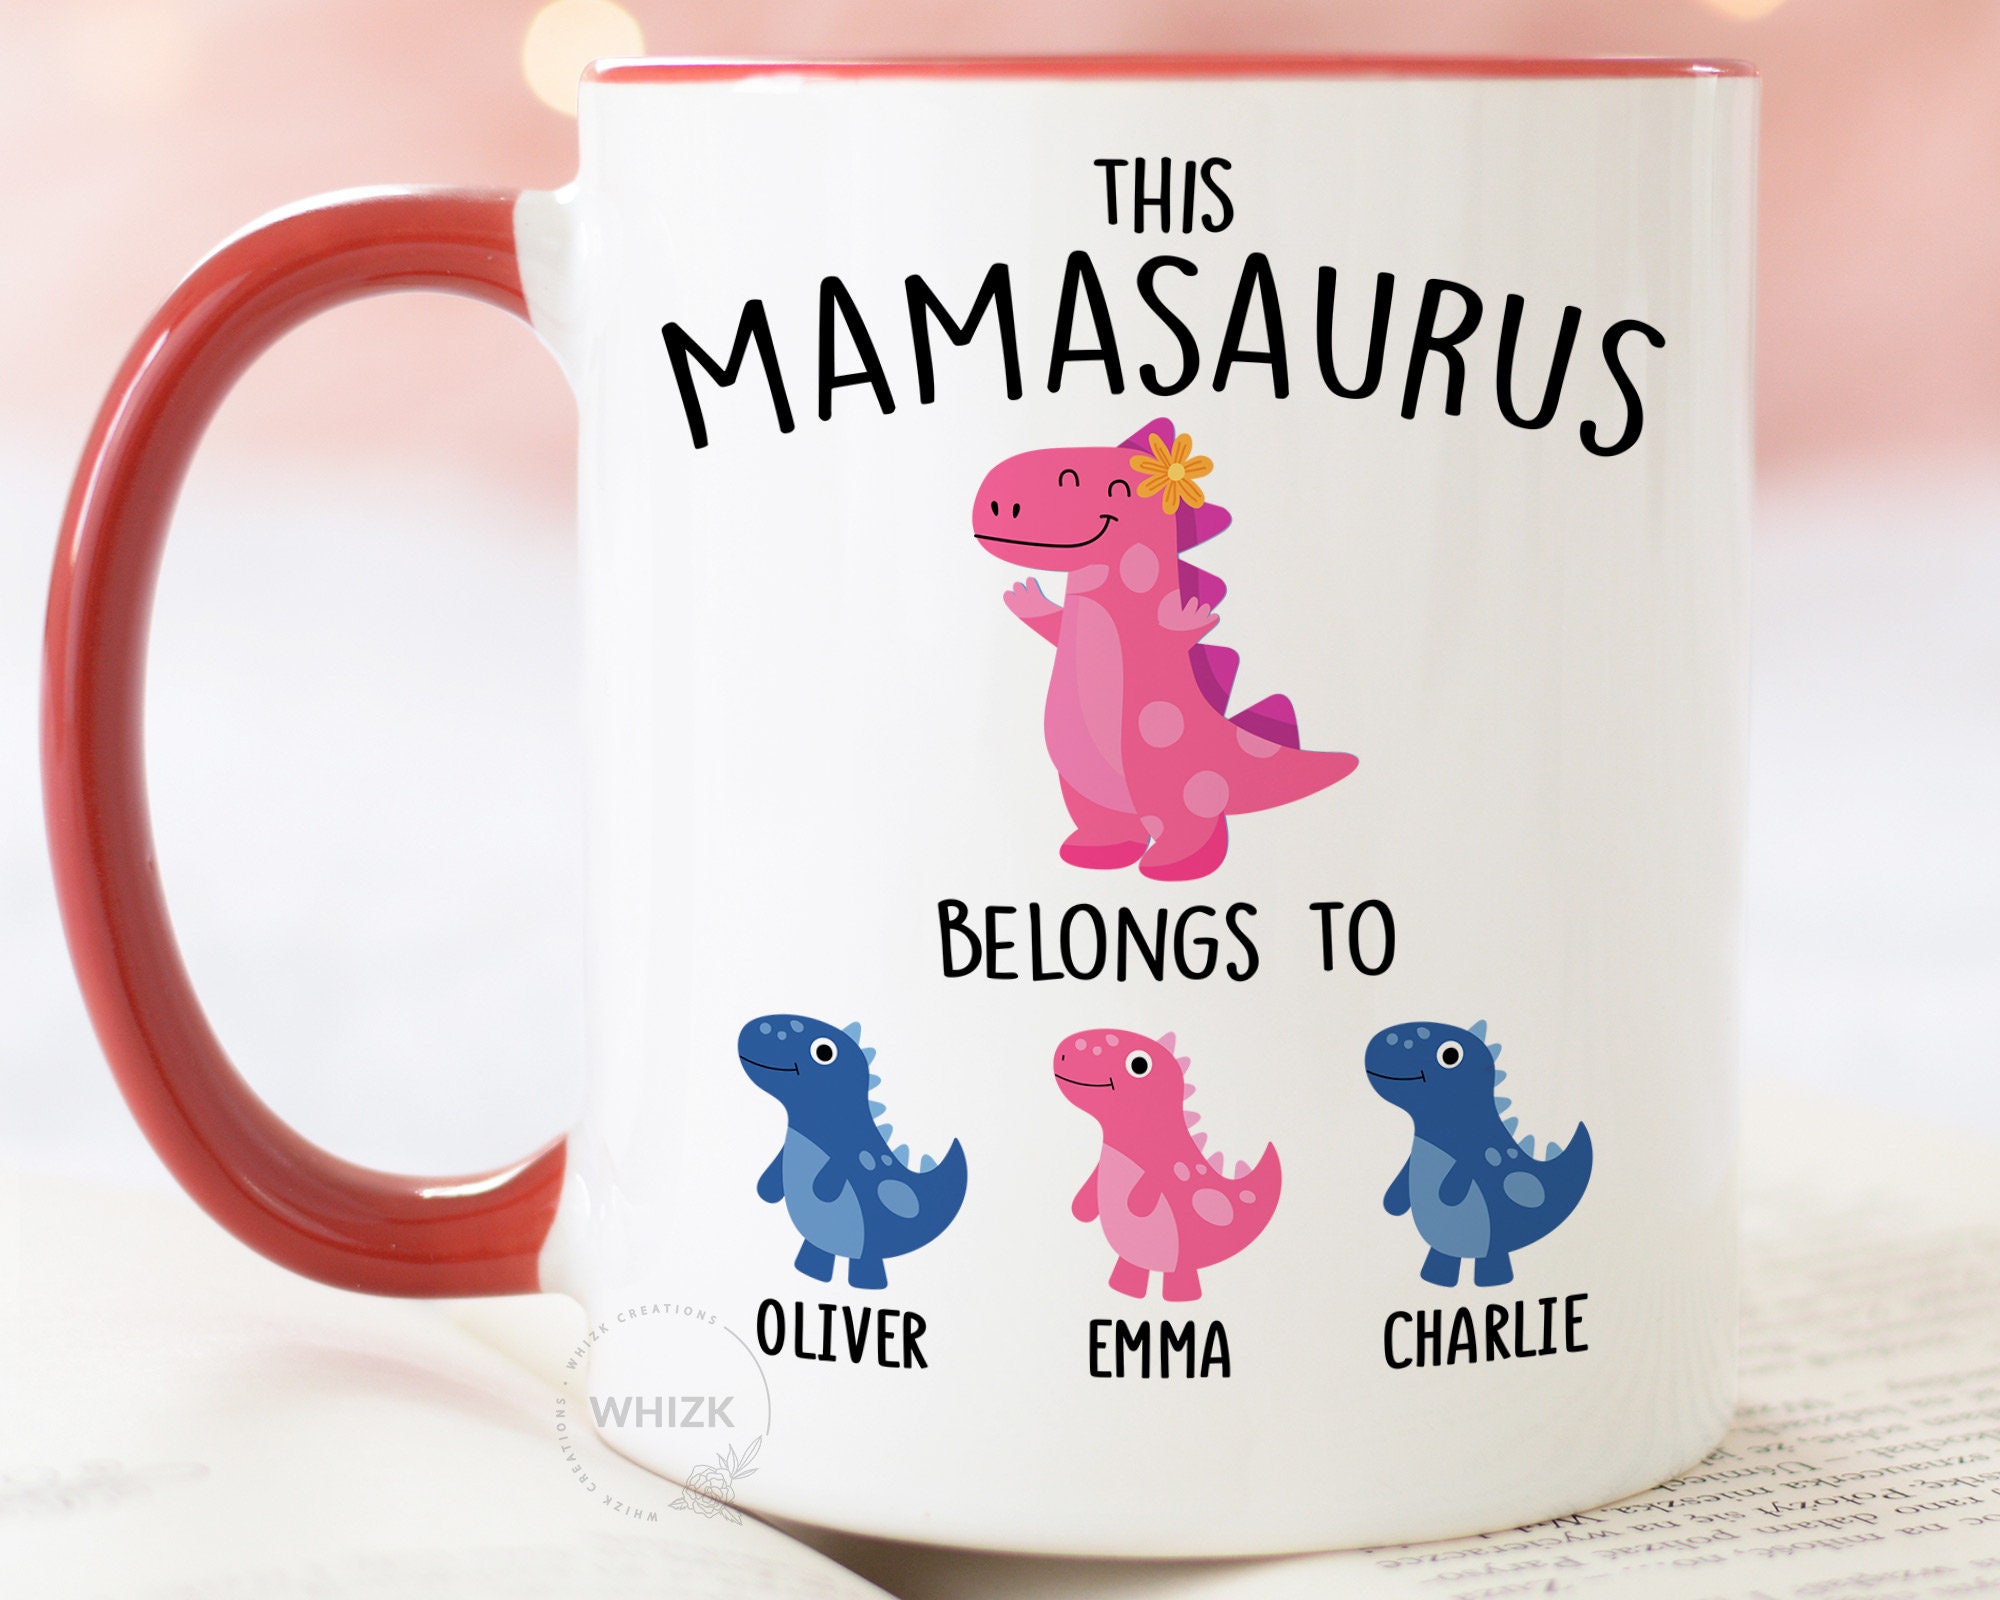 Mamasaurus Mug, Don't Mess with Mamasaurus You'll Get Jurasskicked Coffee Mug, Dinosaur Mug, Dinosaur Mug N Gift for Mom Tired As A Mother, Ceramic